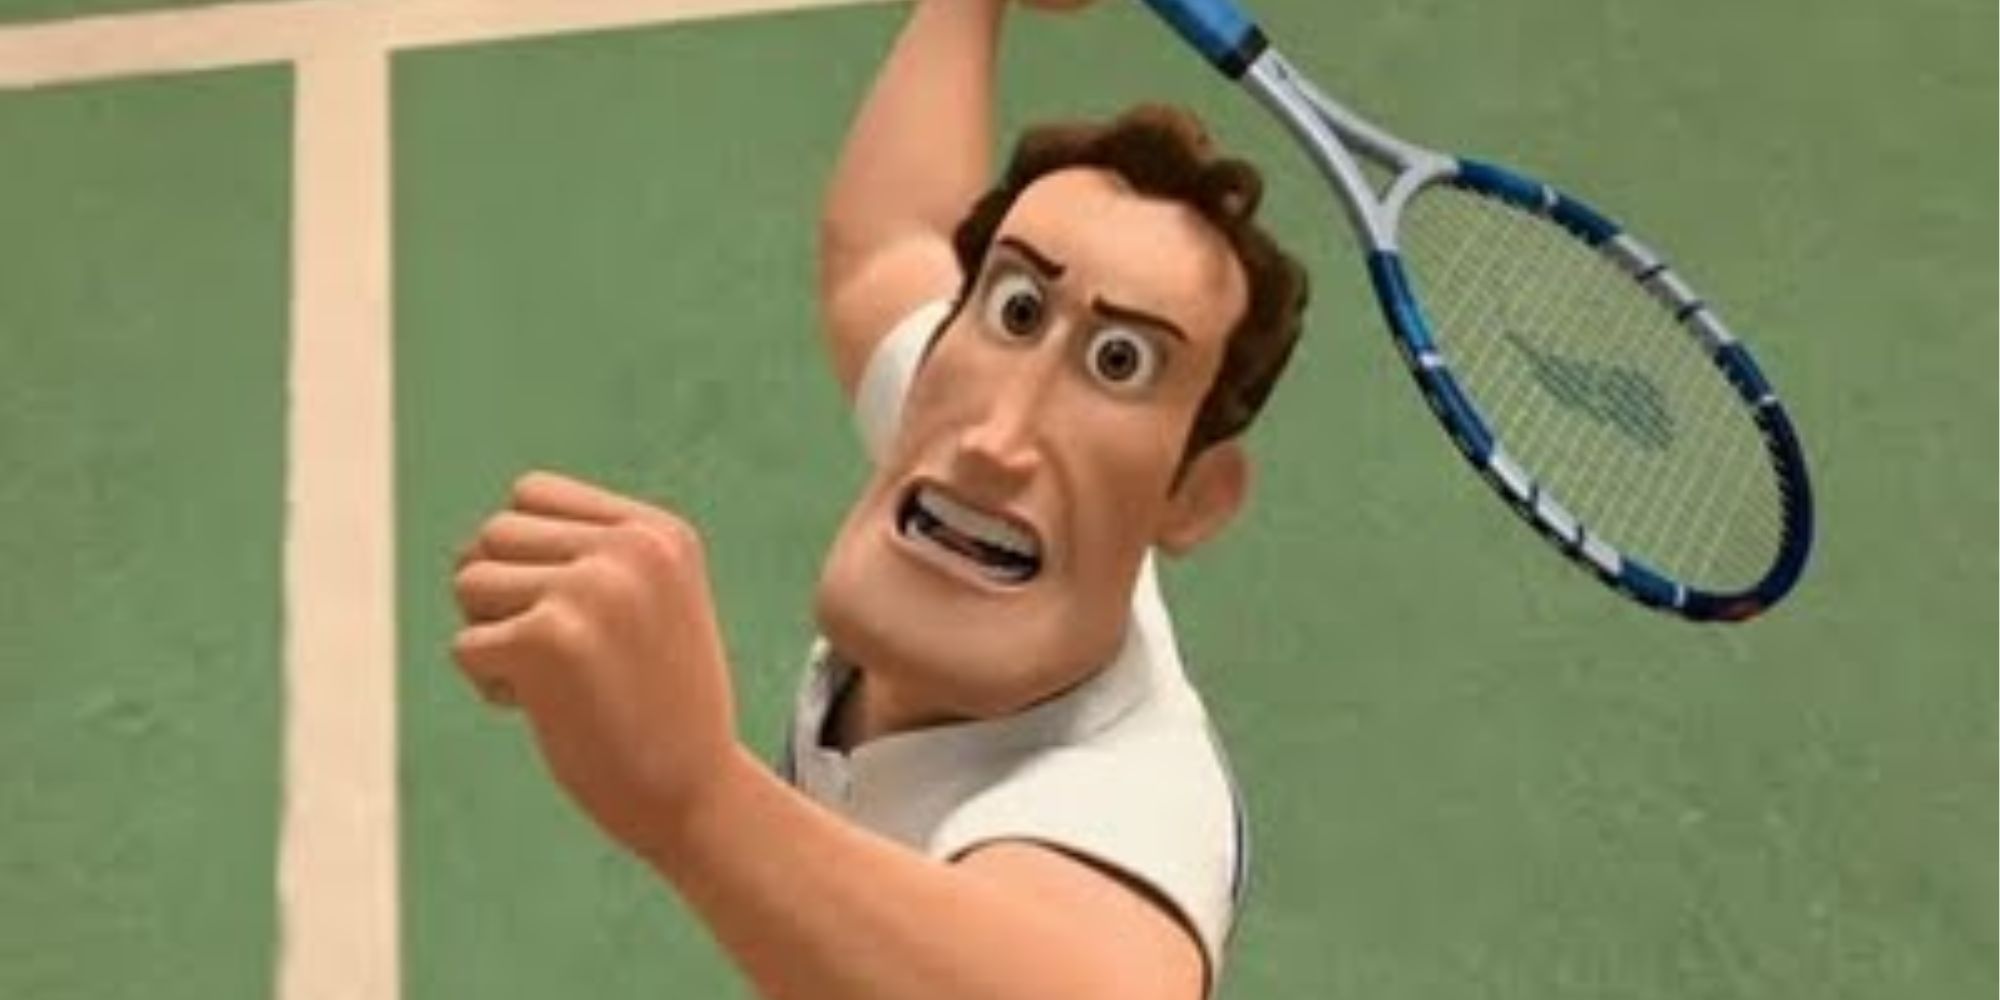 Ken swings a tennis racket 